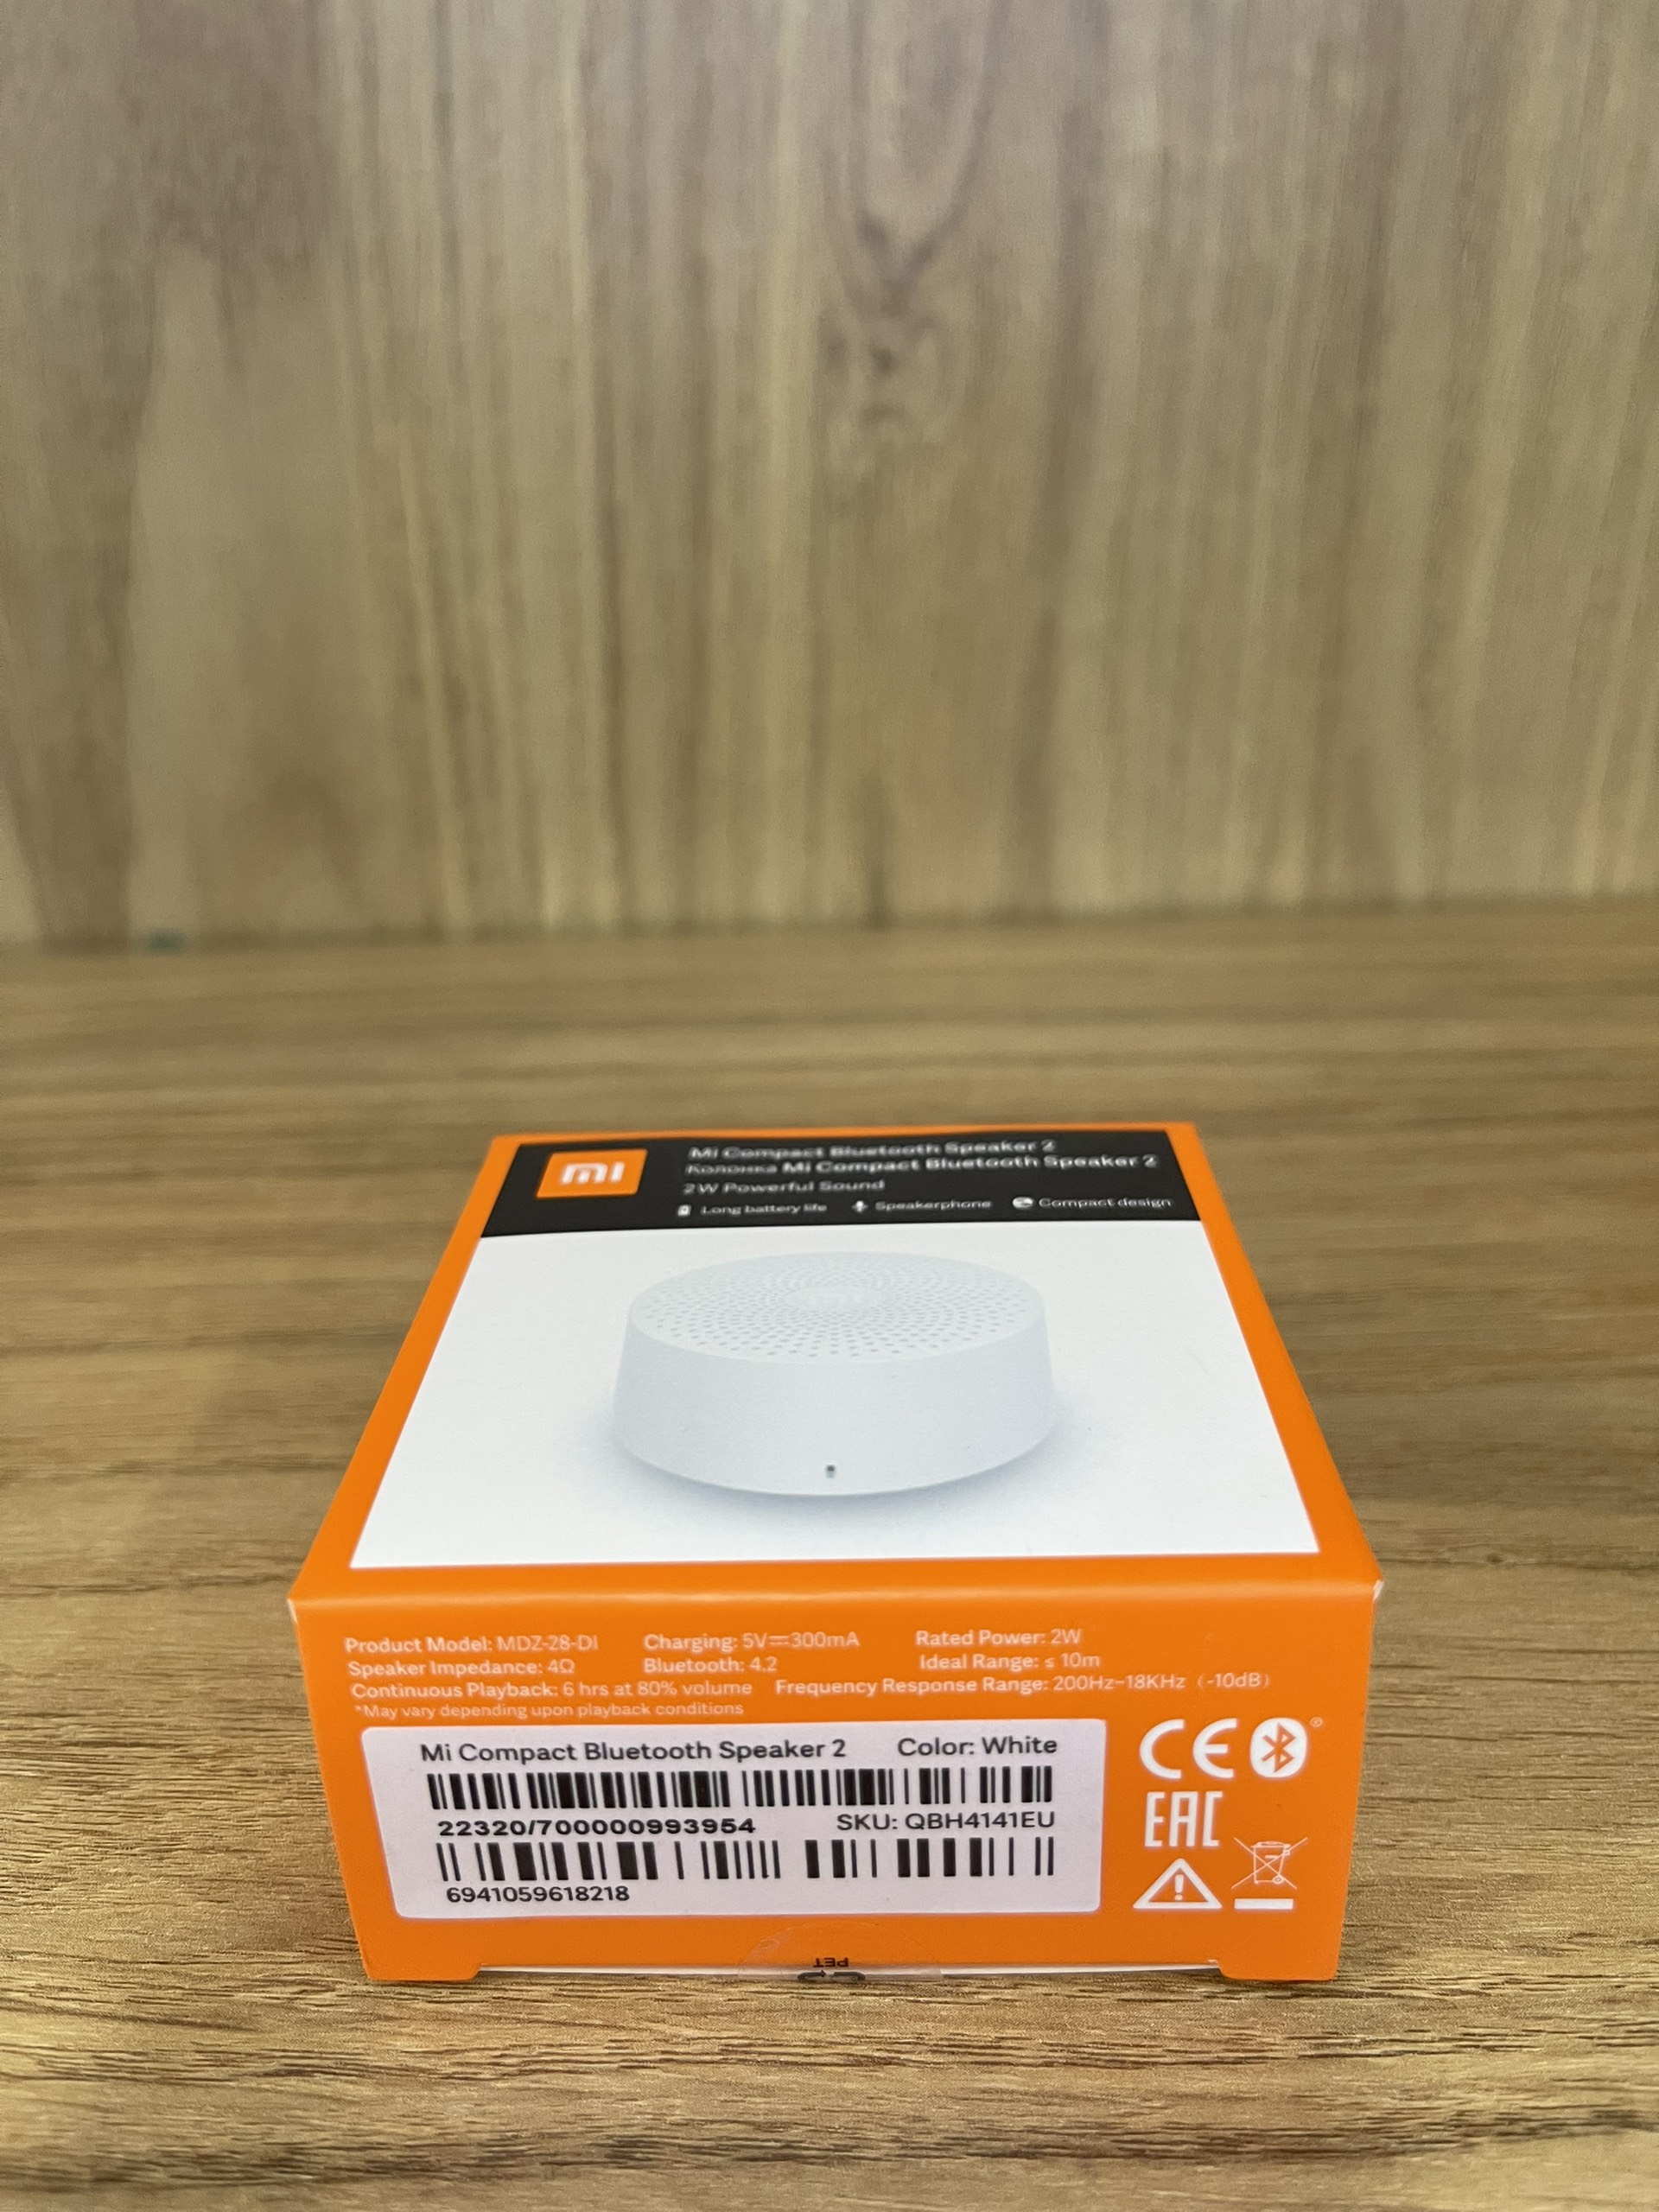 Loa Bluetooth Xiaomi Mi Compact Speaker 2 - Hàng chính hãng - Loa Xiaomi nhỏ gọn tiện lợi, thời gian sử dụng 6 tiếng